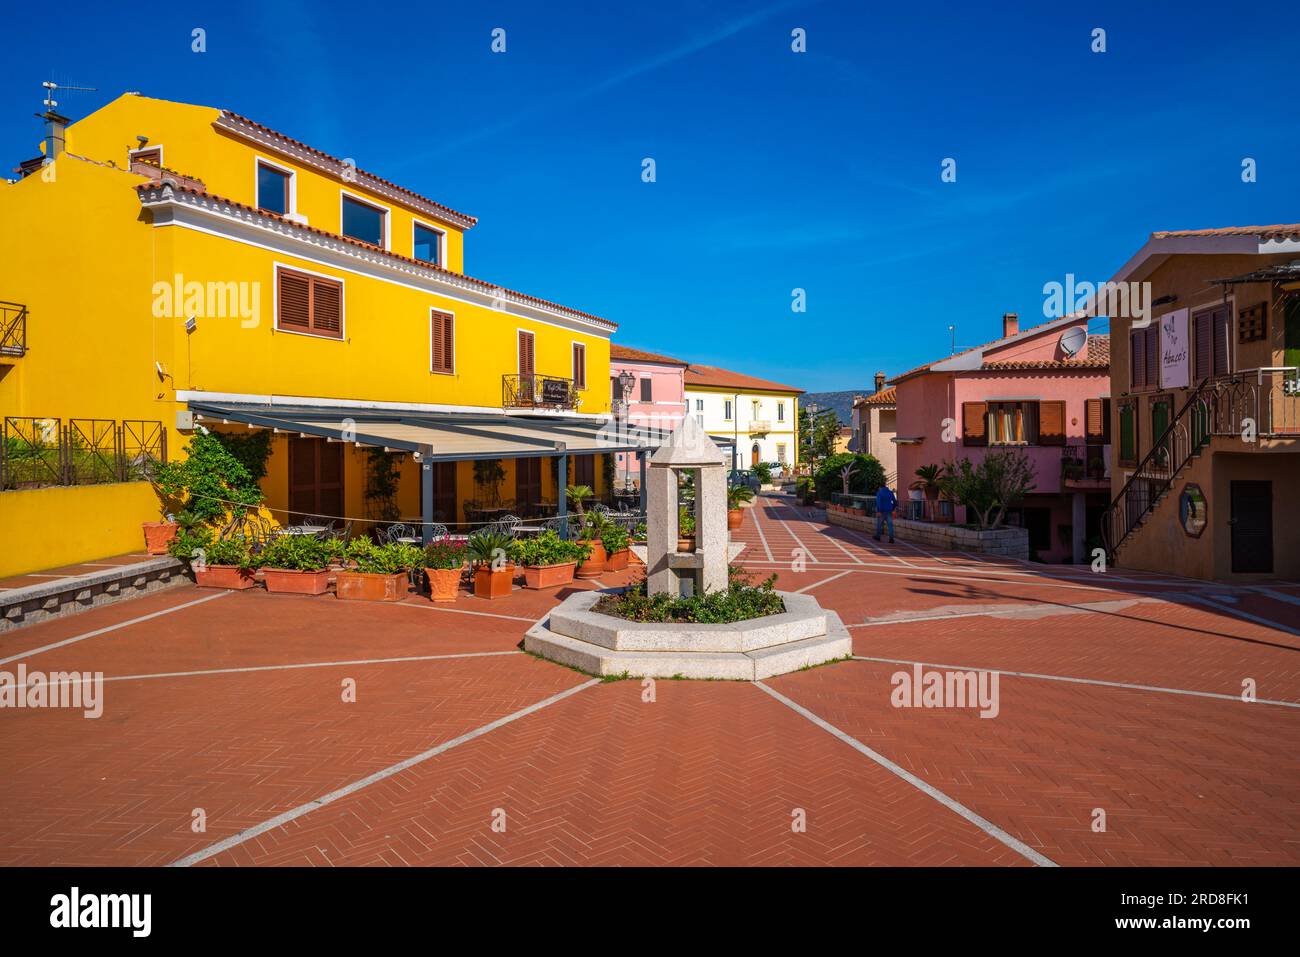 Vue des bâtiments colorés de Piazza Mediterraneo, San Teodoro, Sardaigne, Italie, Méditerranée, Europe Banque D'Images